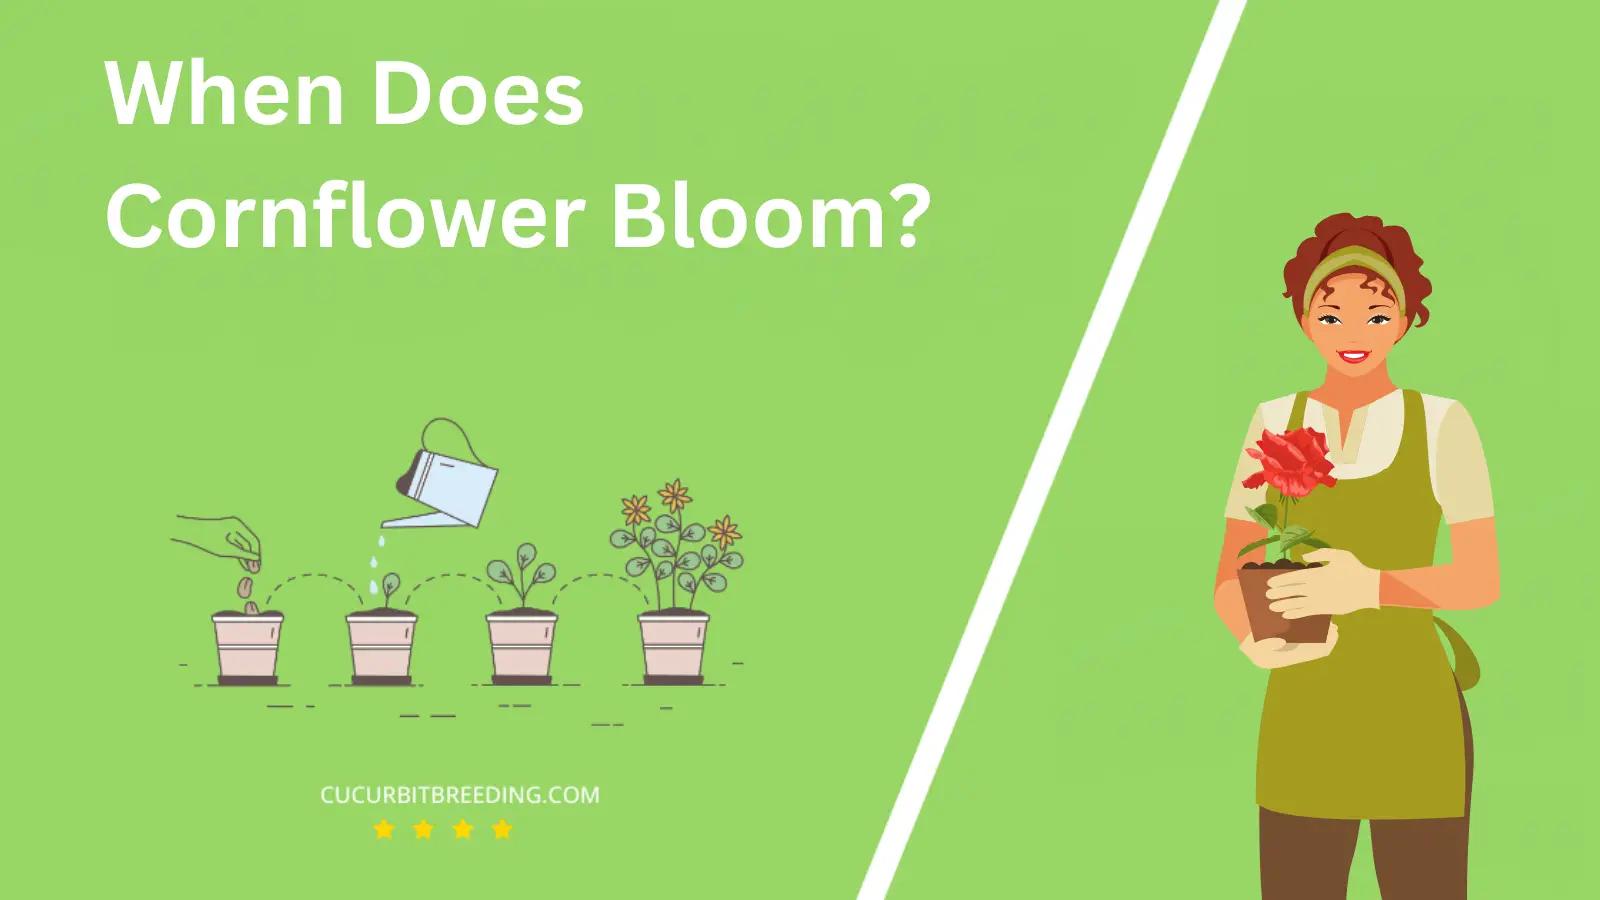 When Does Cornflower Bloom?